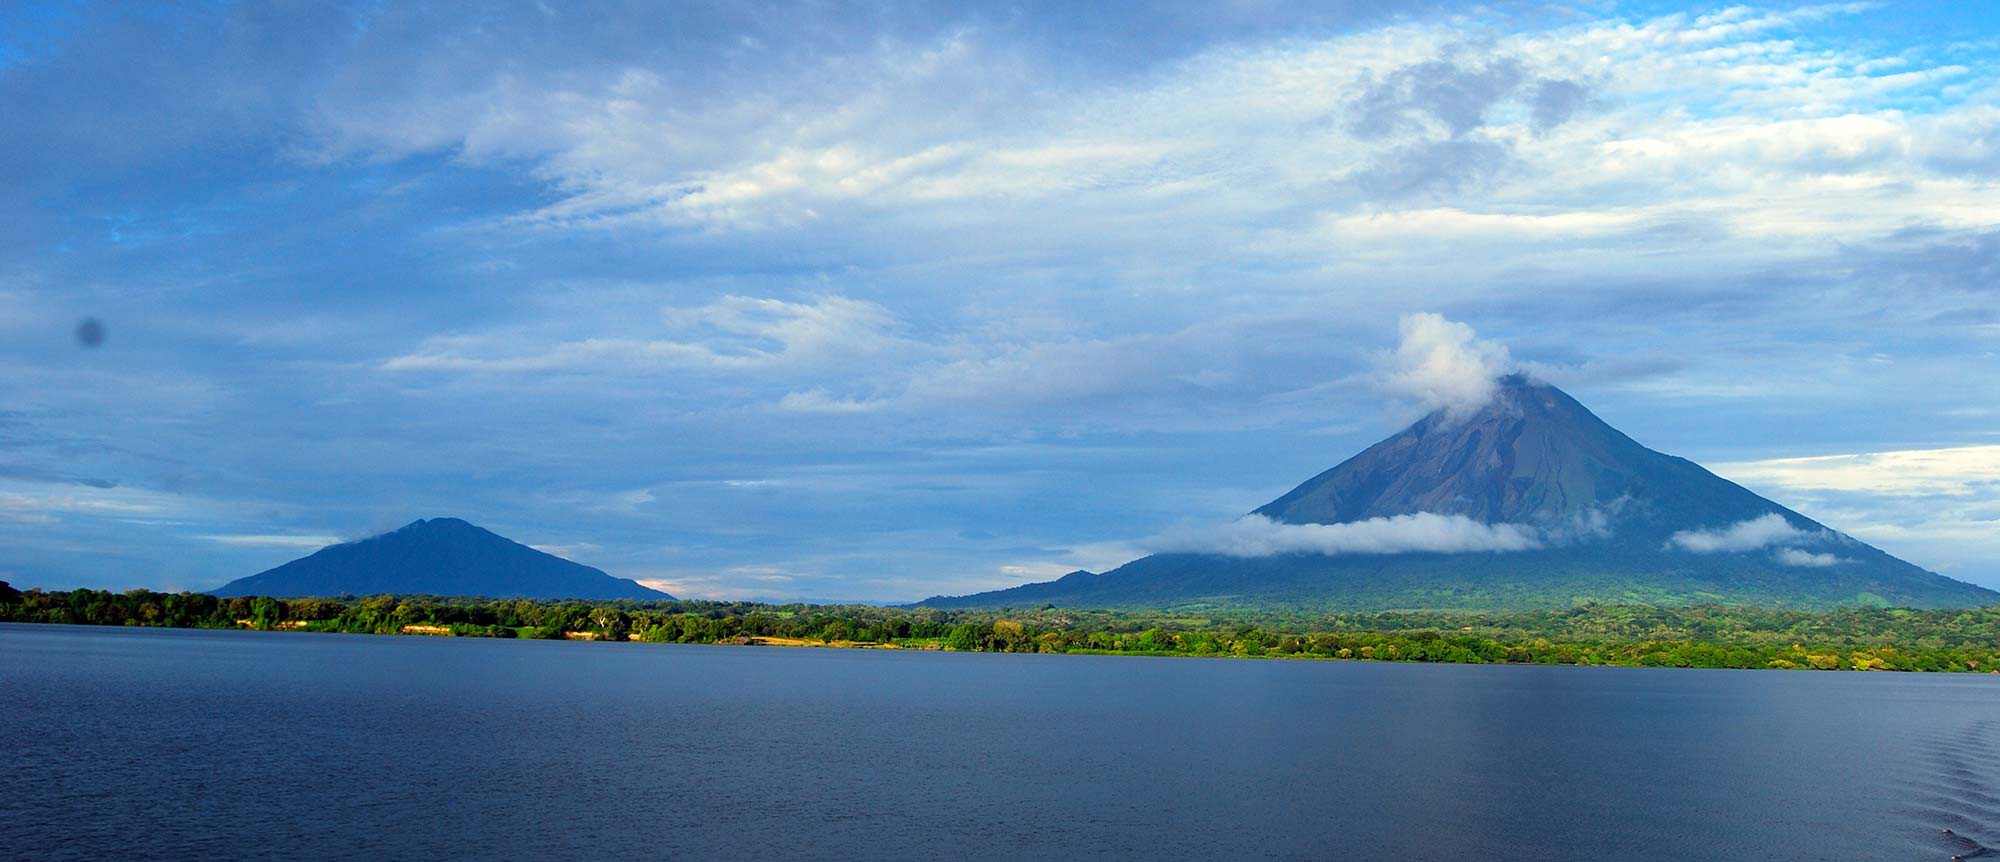 Isla de Ometepe - Careli Tours - Nicaragua Tour Operator